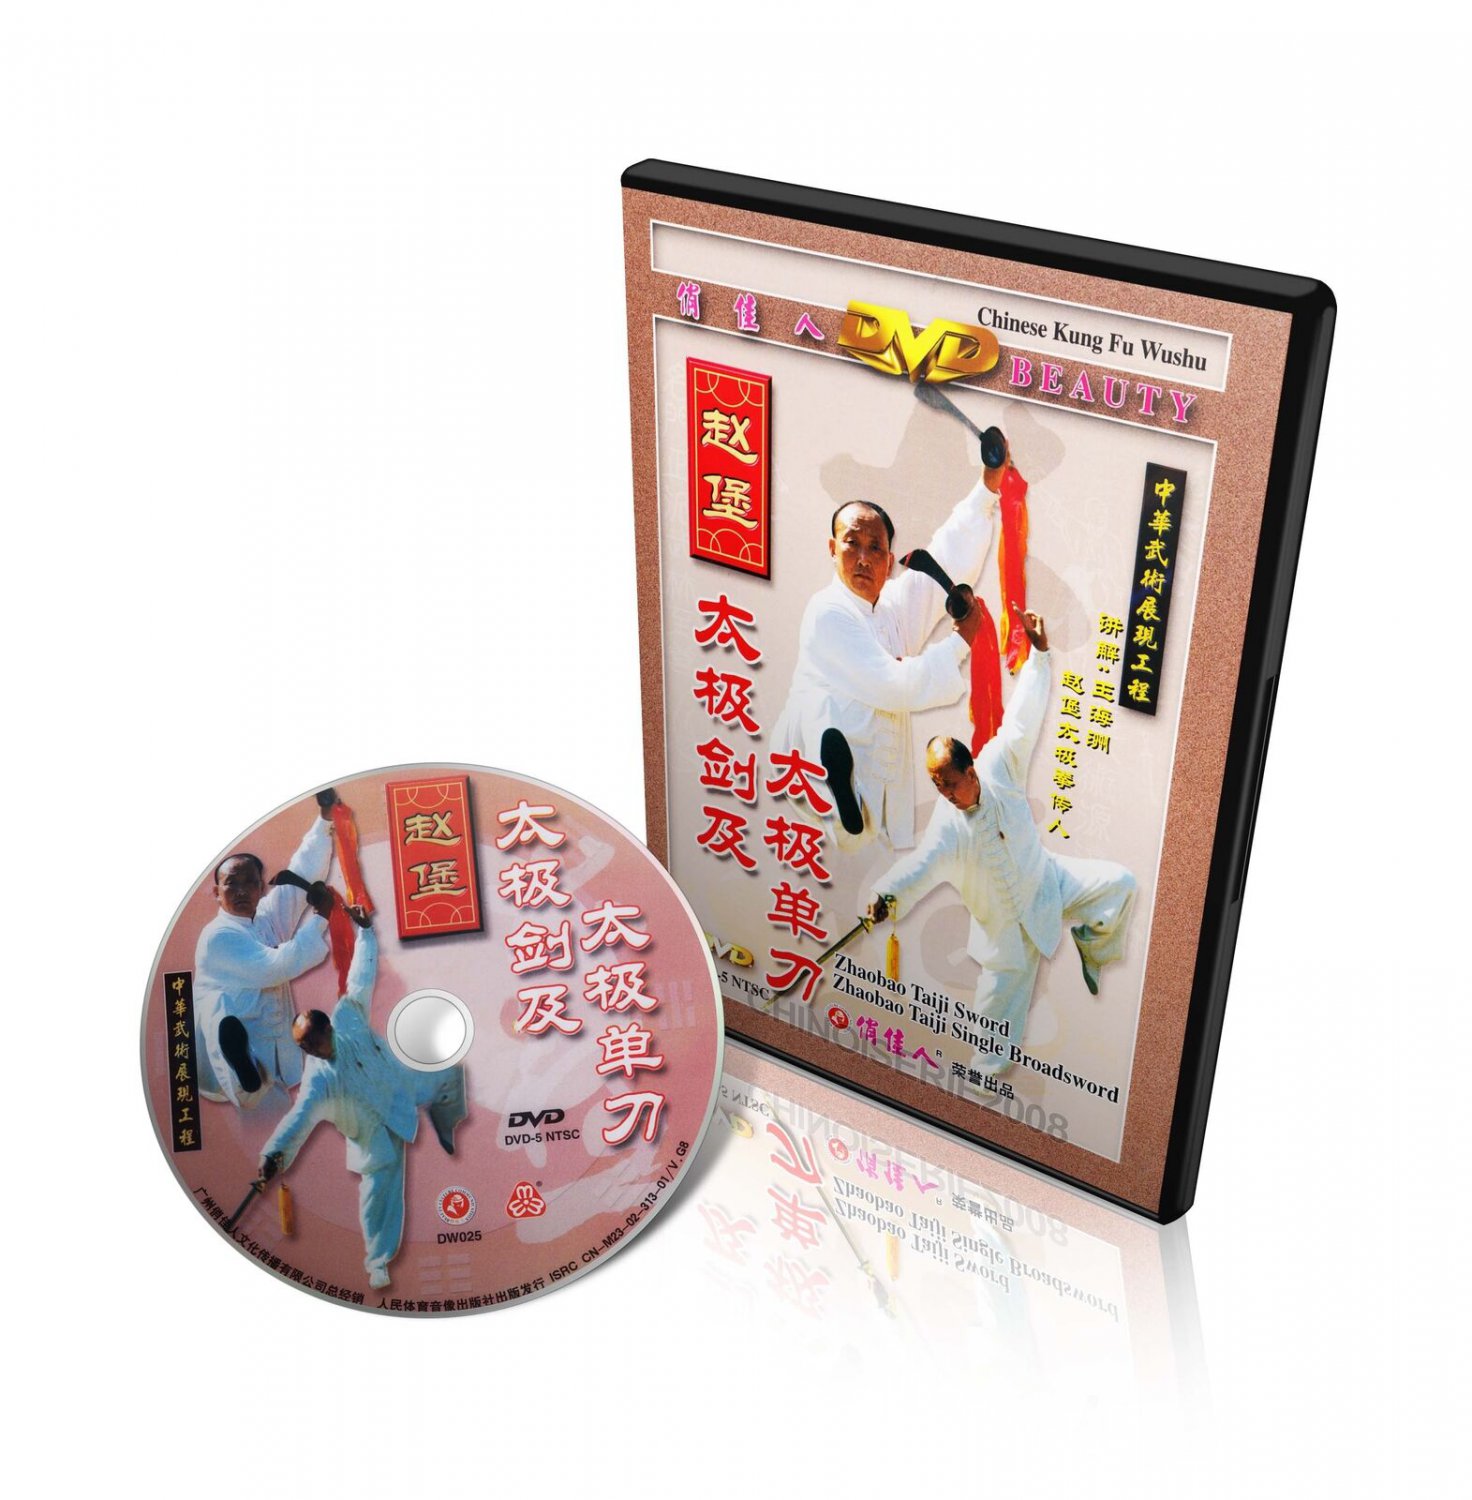 DW025 Zhaobao Style TaiChi Taiji Sword and Taiji Single Broadsword by Wang Haizhou DVD